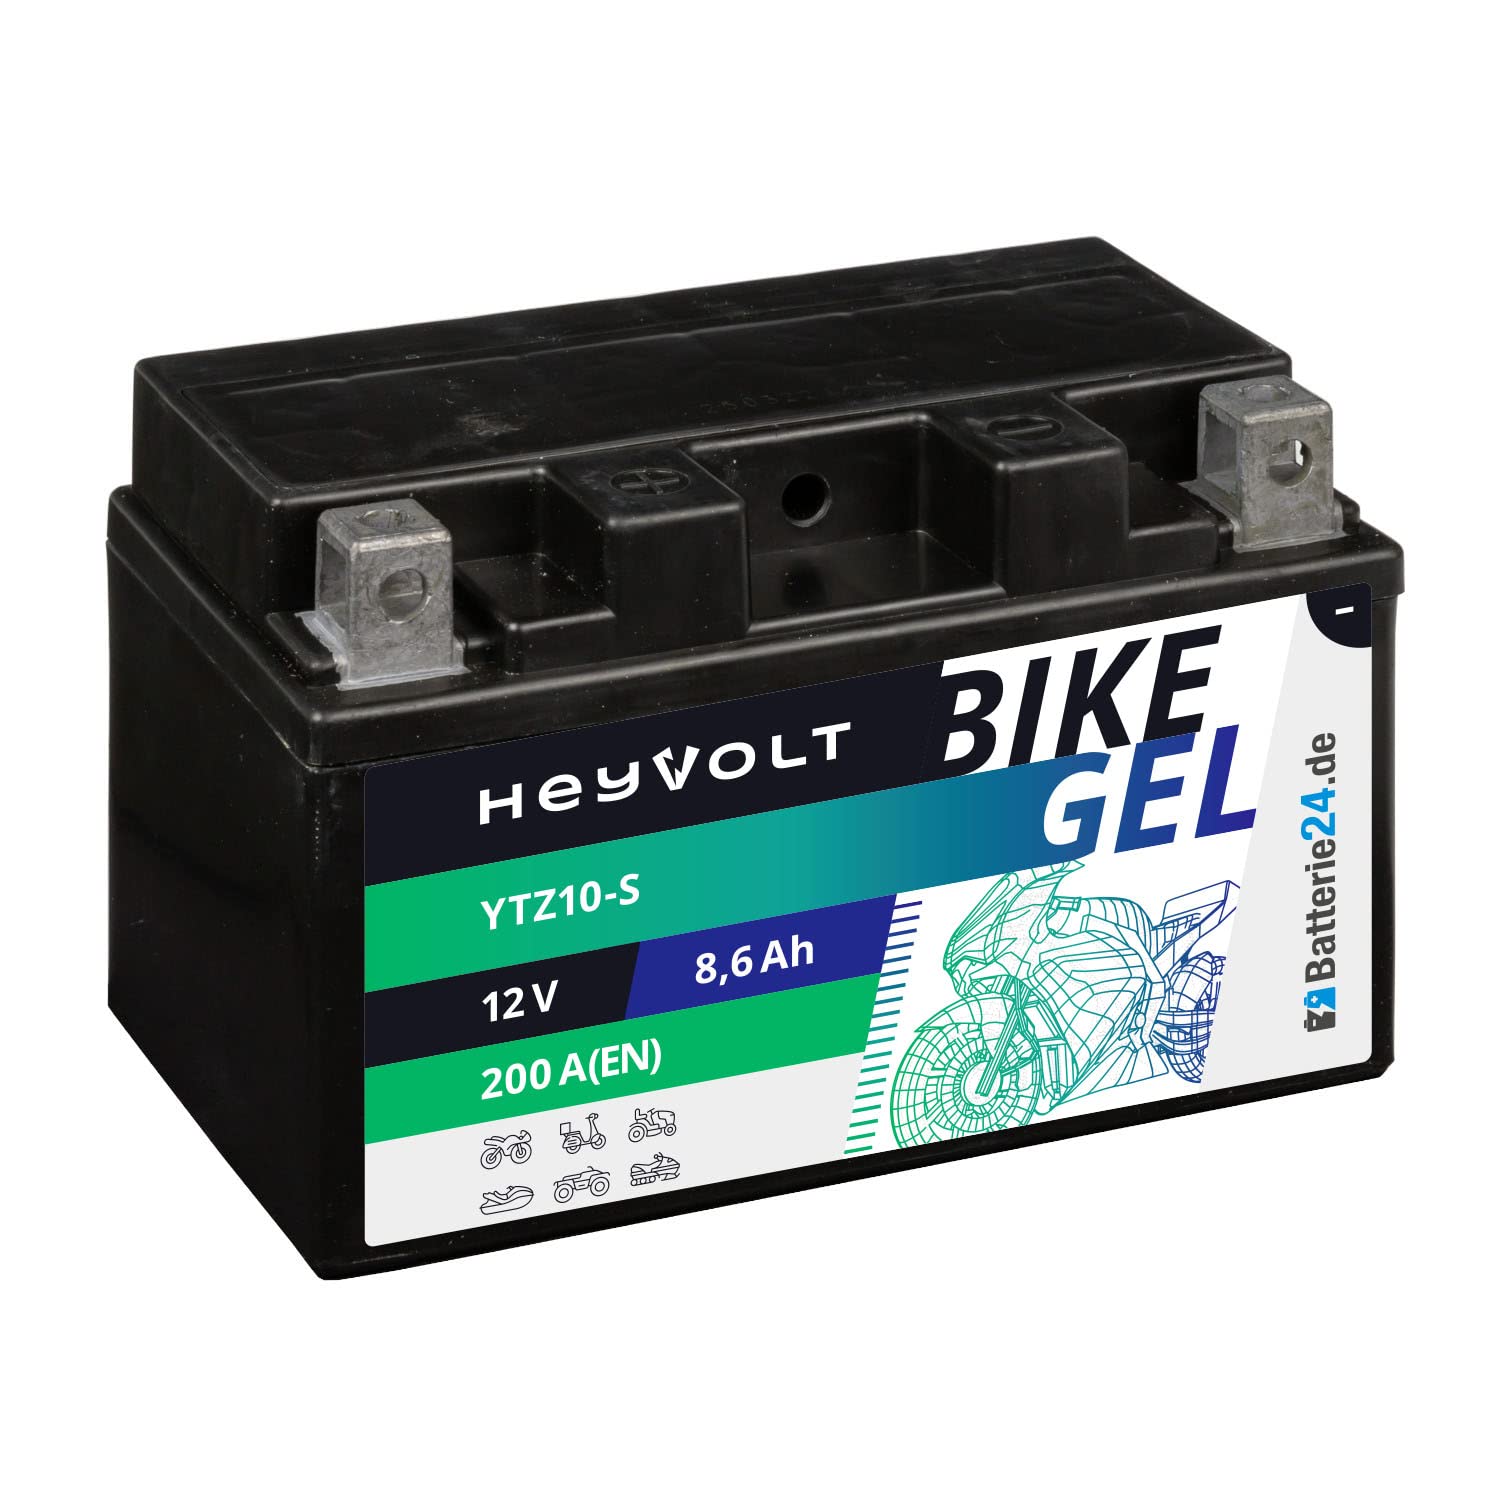 HeyVolt GEL Motorradbatterie 12V 8,6Ah YTZ10-S 50922 50901 GTZ10-S YTZ10S-BS GEL12-10B-4 von Batterie24.de